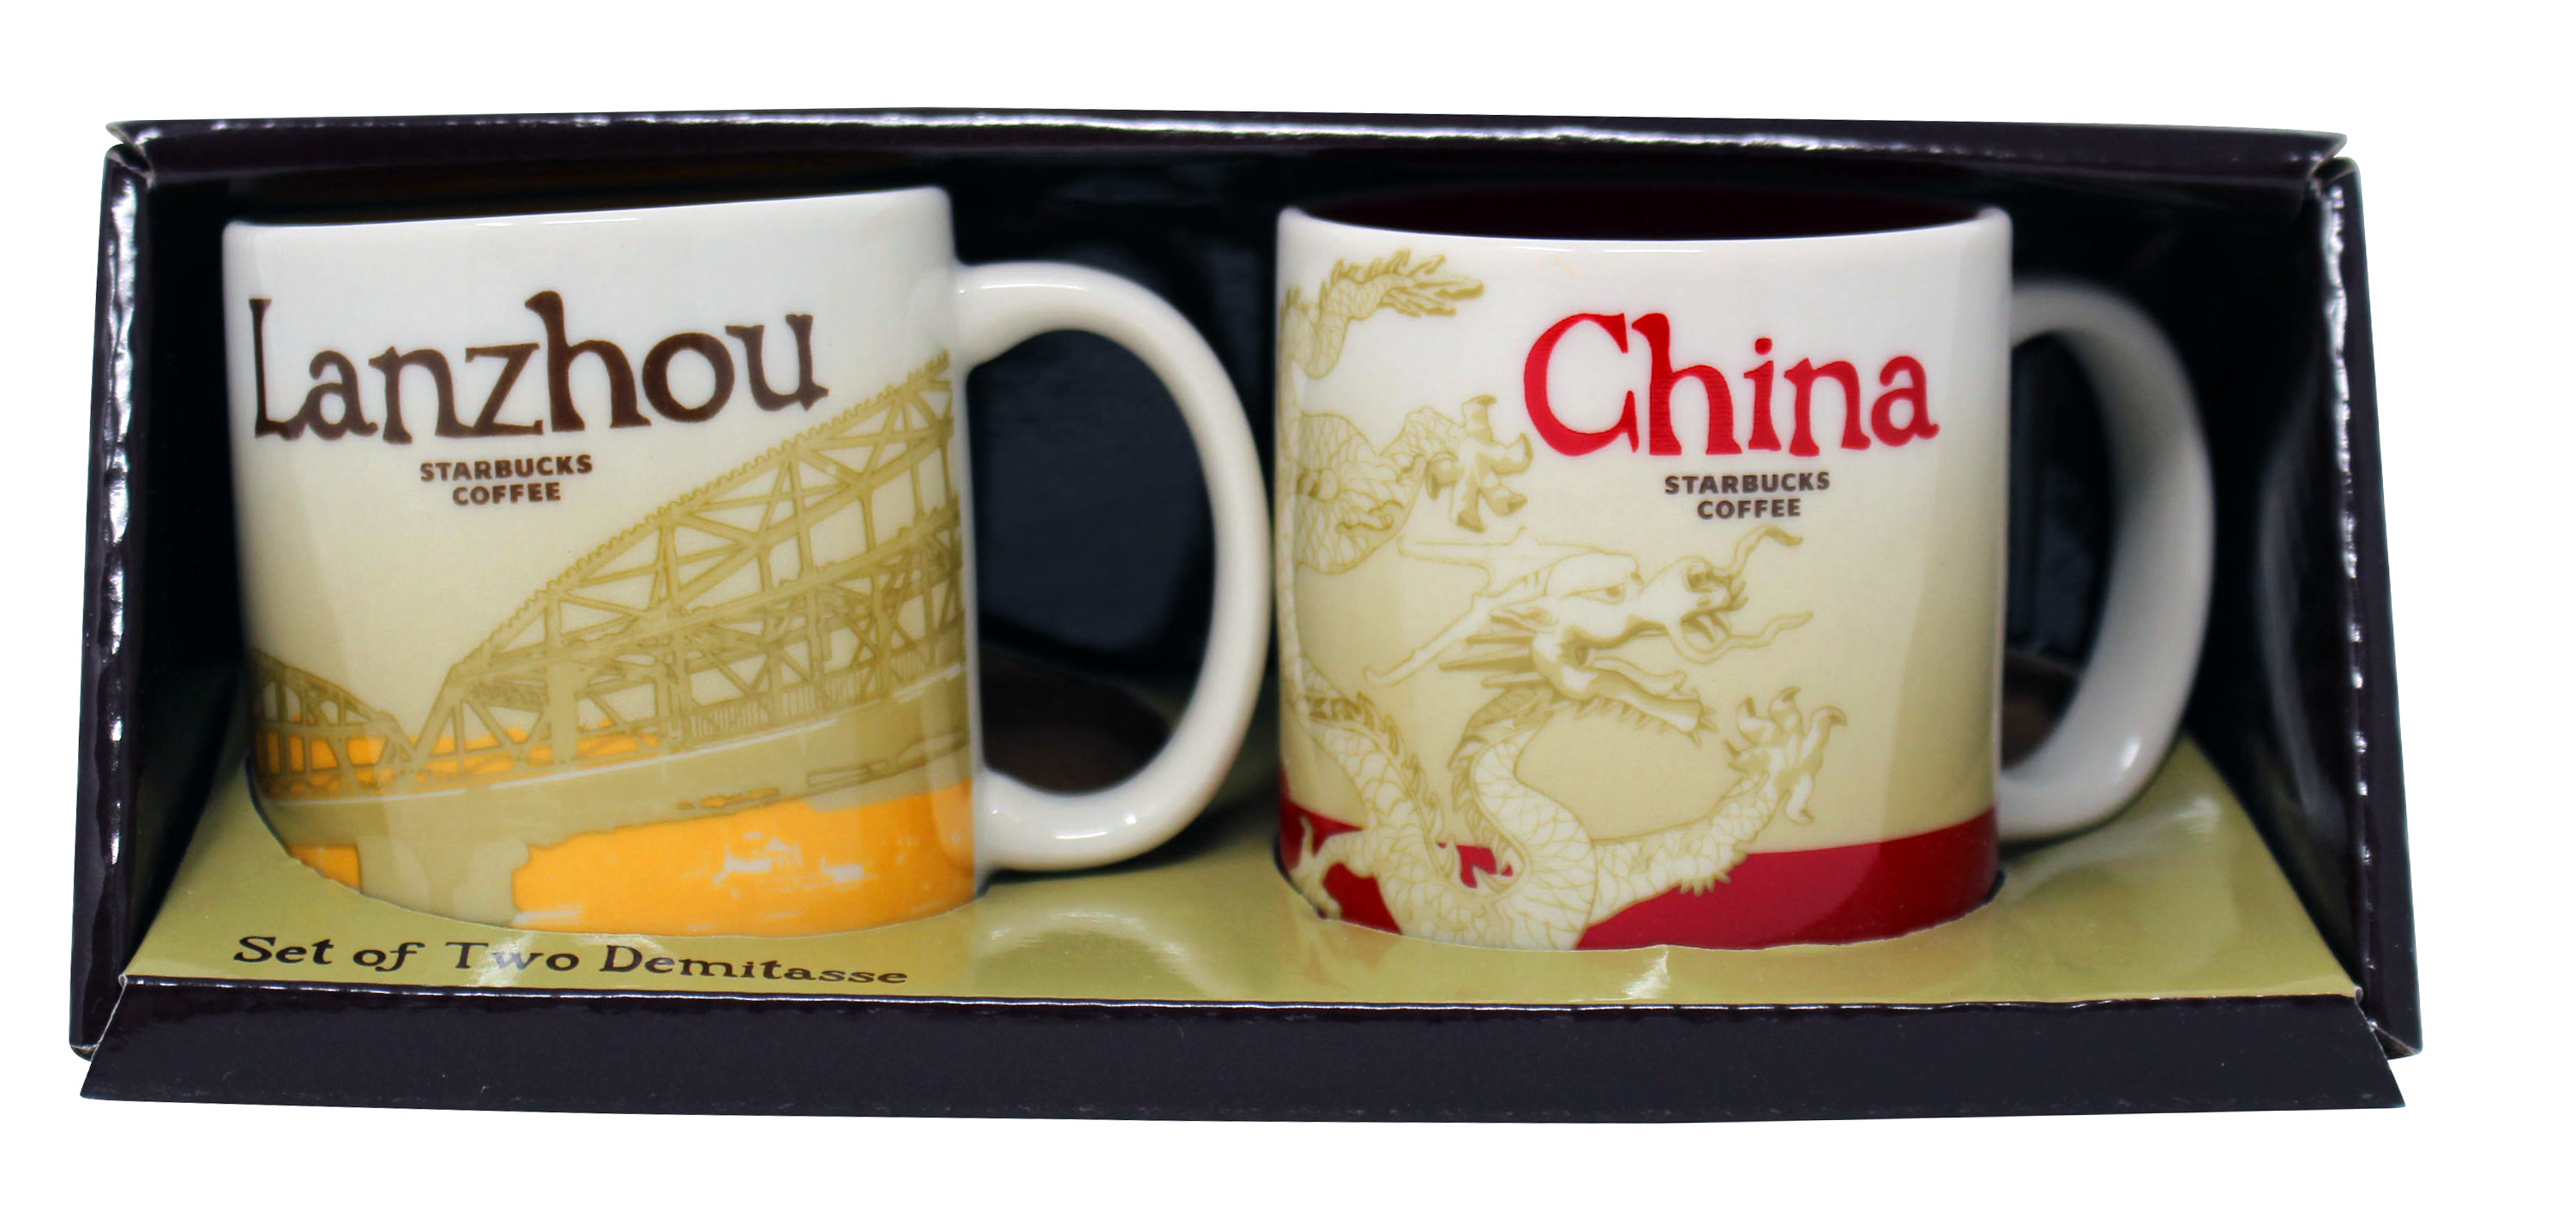 Starbucks Global Icon Series Lanzhou and China Demitasse Mugs, 3 Oz (Set of 2)